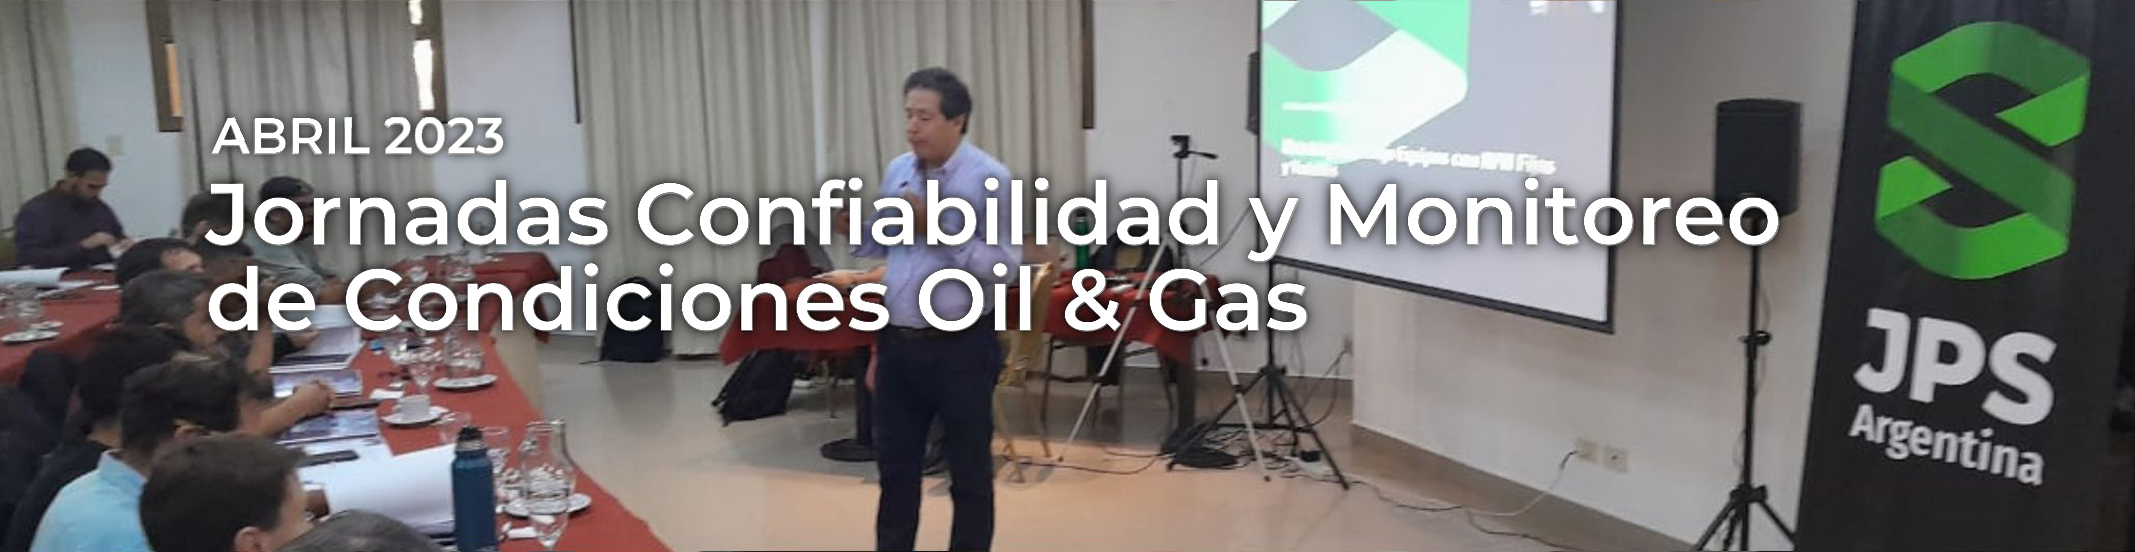 Cierre del Curso Jornadas Confiabilidad y Monitoreo de Condiciones Oil & Gas realizado Abril 2023